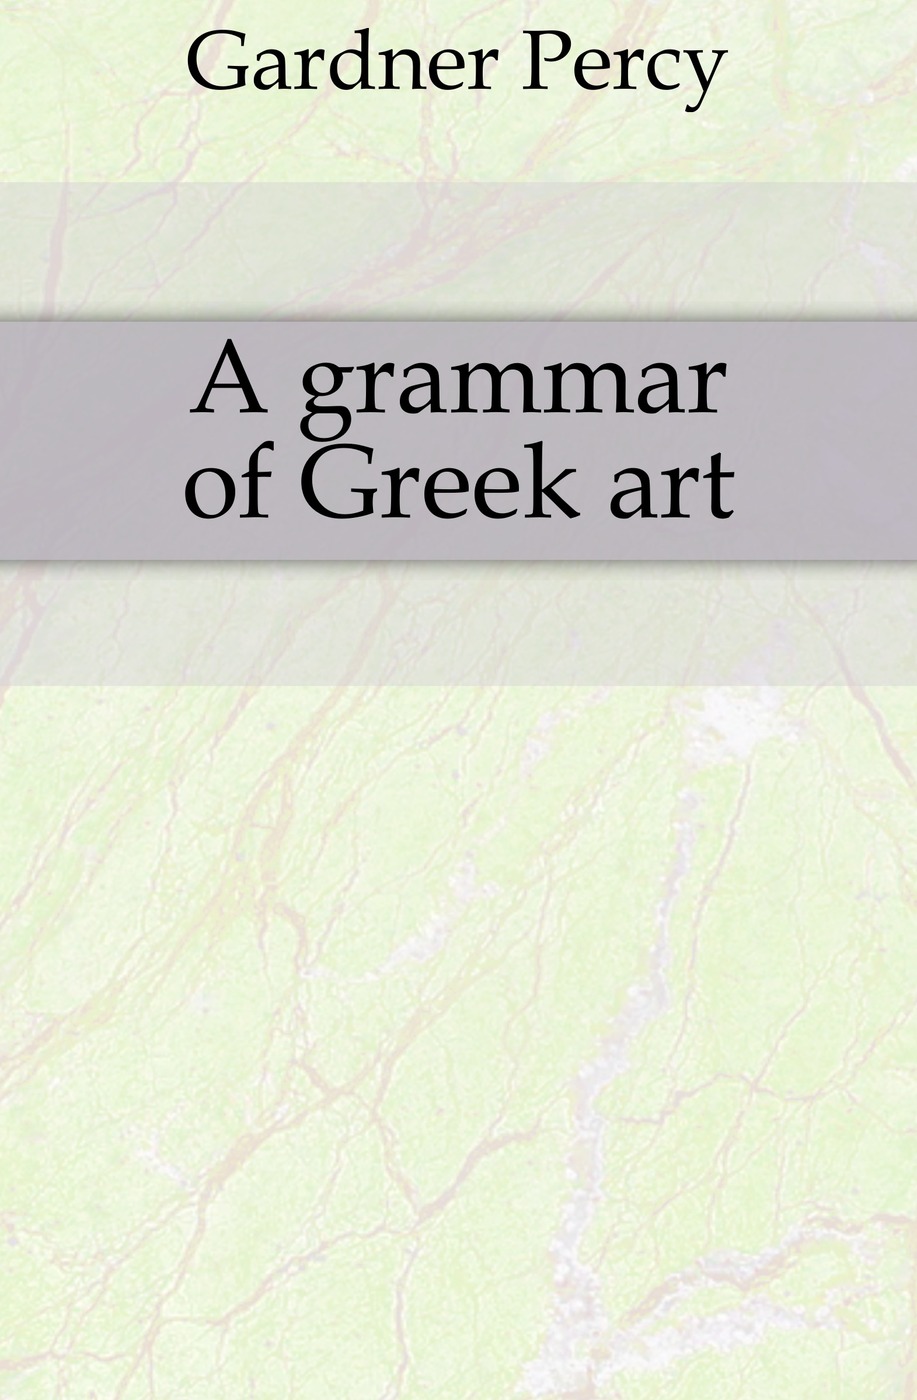 A grammar of Greek art